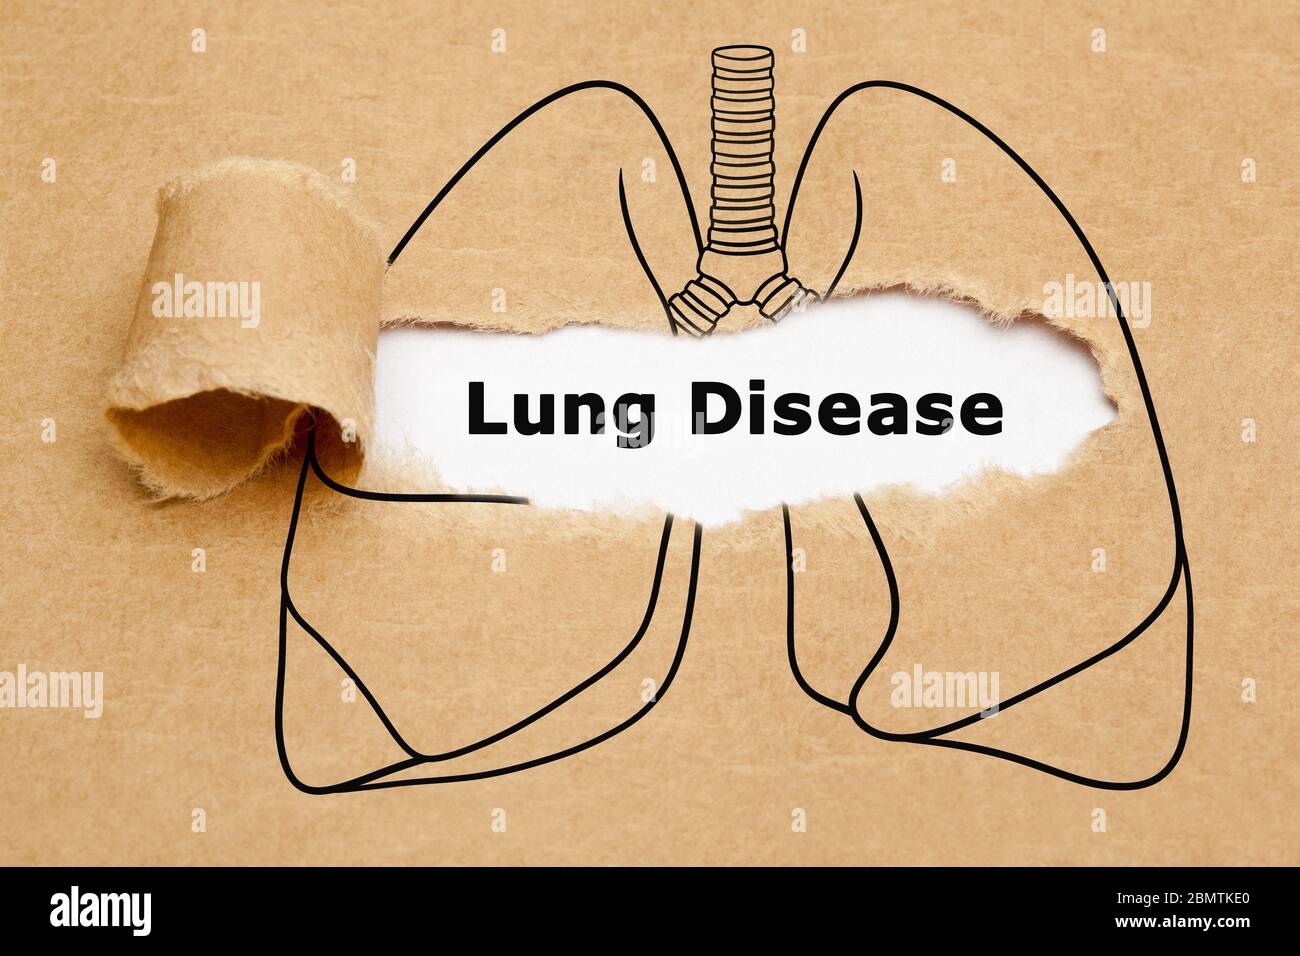 Text Lungenerkrankung hinter zerrissenen braunen Papier in der menschlichen Lunge Zeichnung. Konzept über verschiedene Erkrankungen der Atemwege. Stockfoto